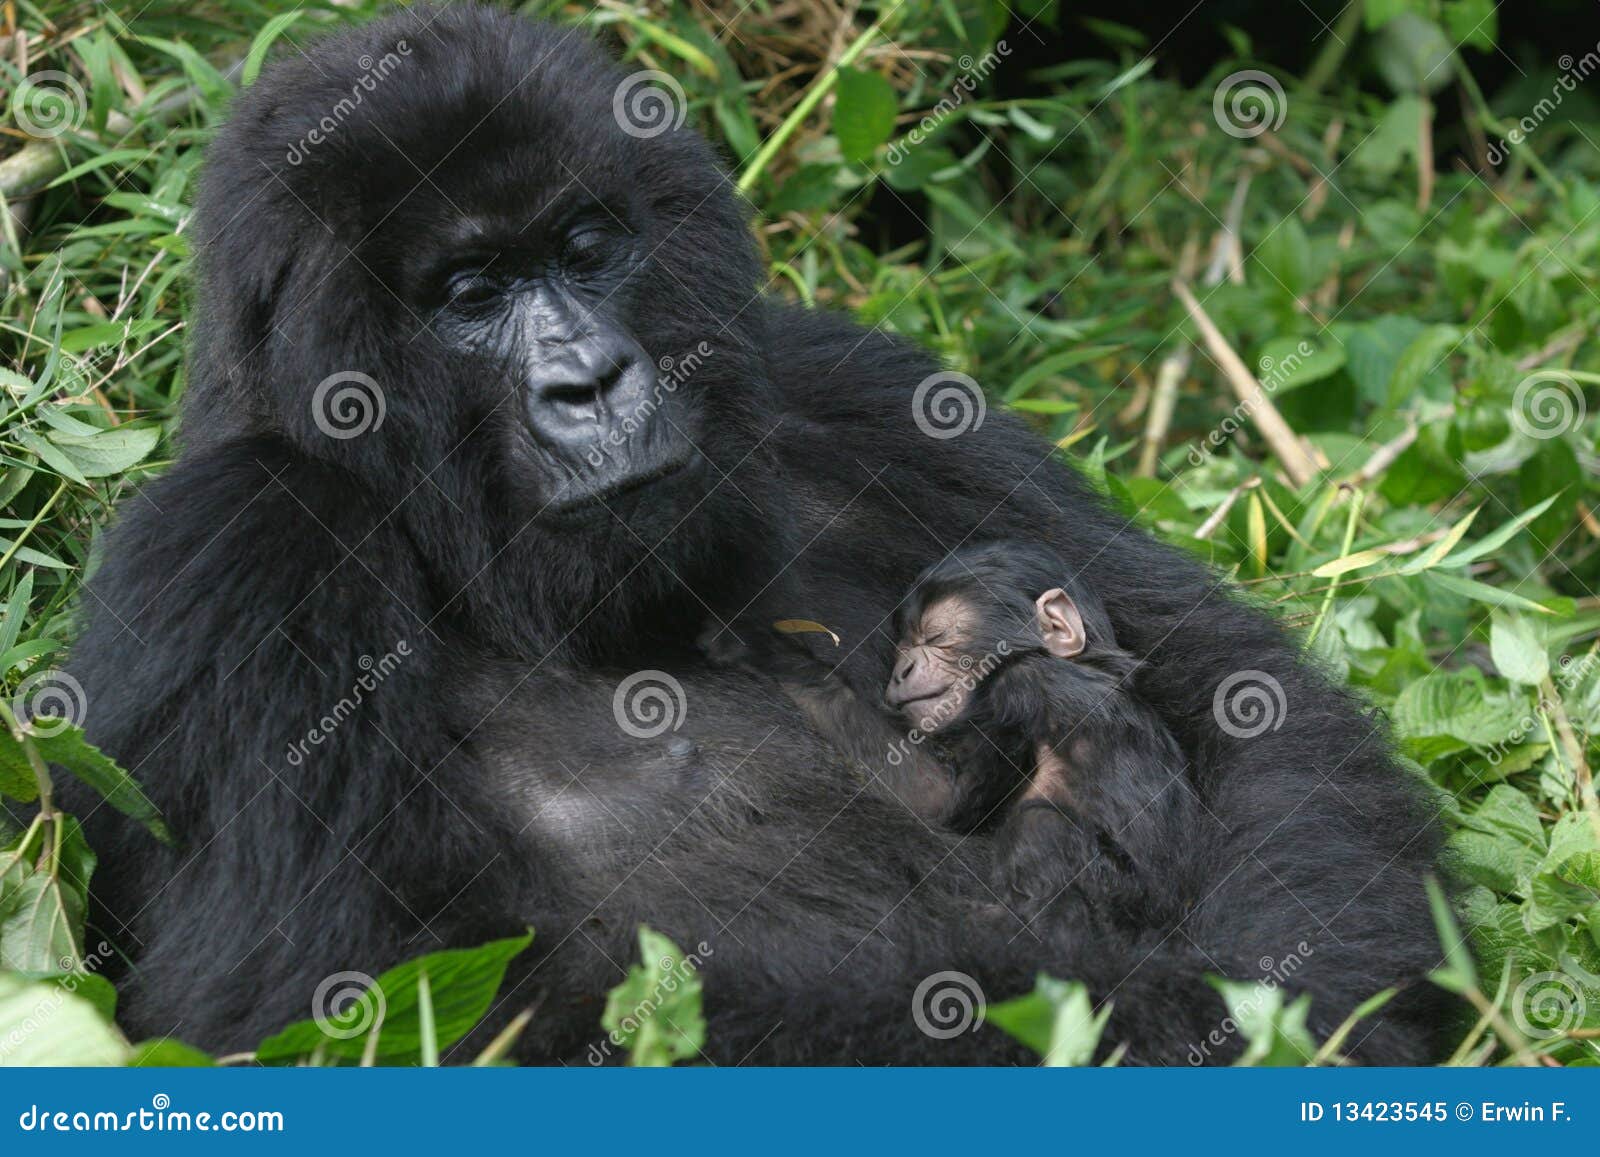 mountain gorilla,rwanda